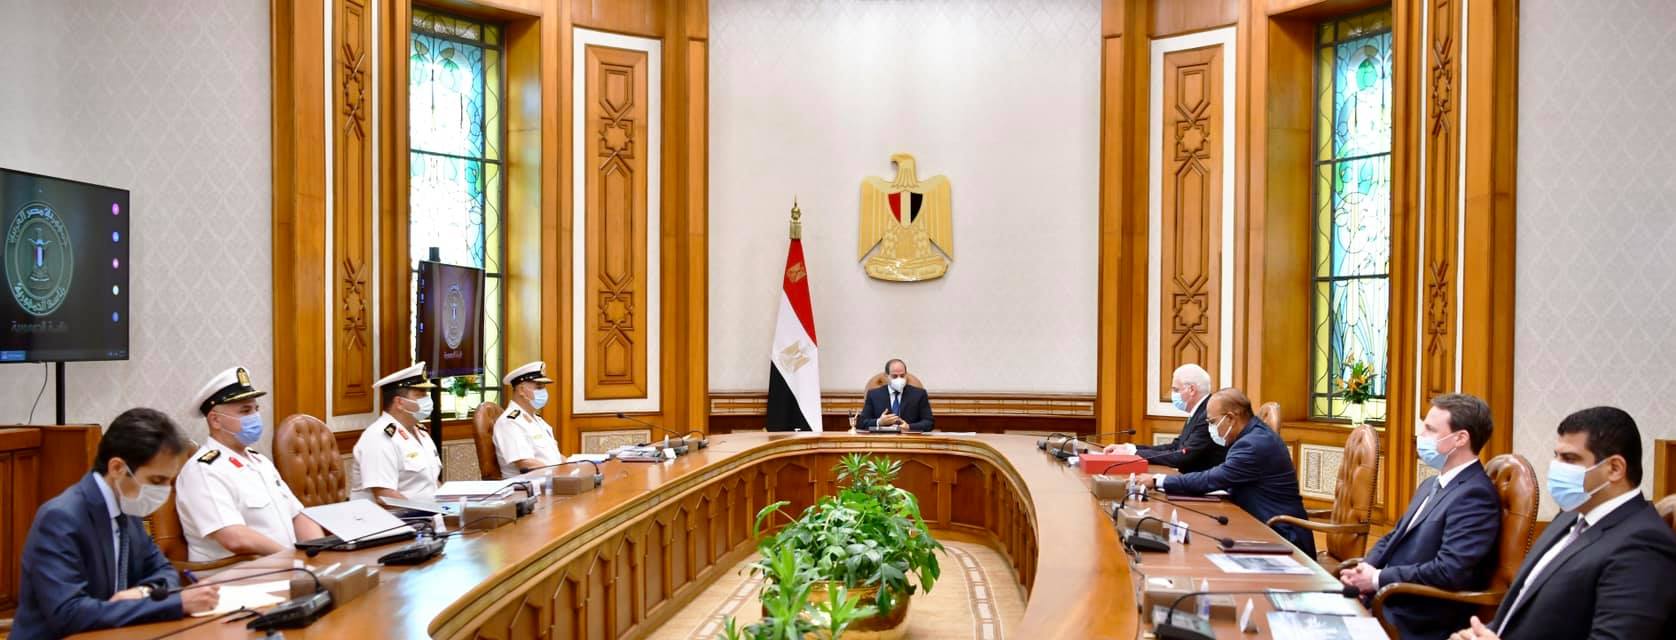 الرئيس السيسي يبحث مع رئيس لورسن الألمانية تطوير الصناعات البحرية المصرية